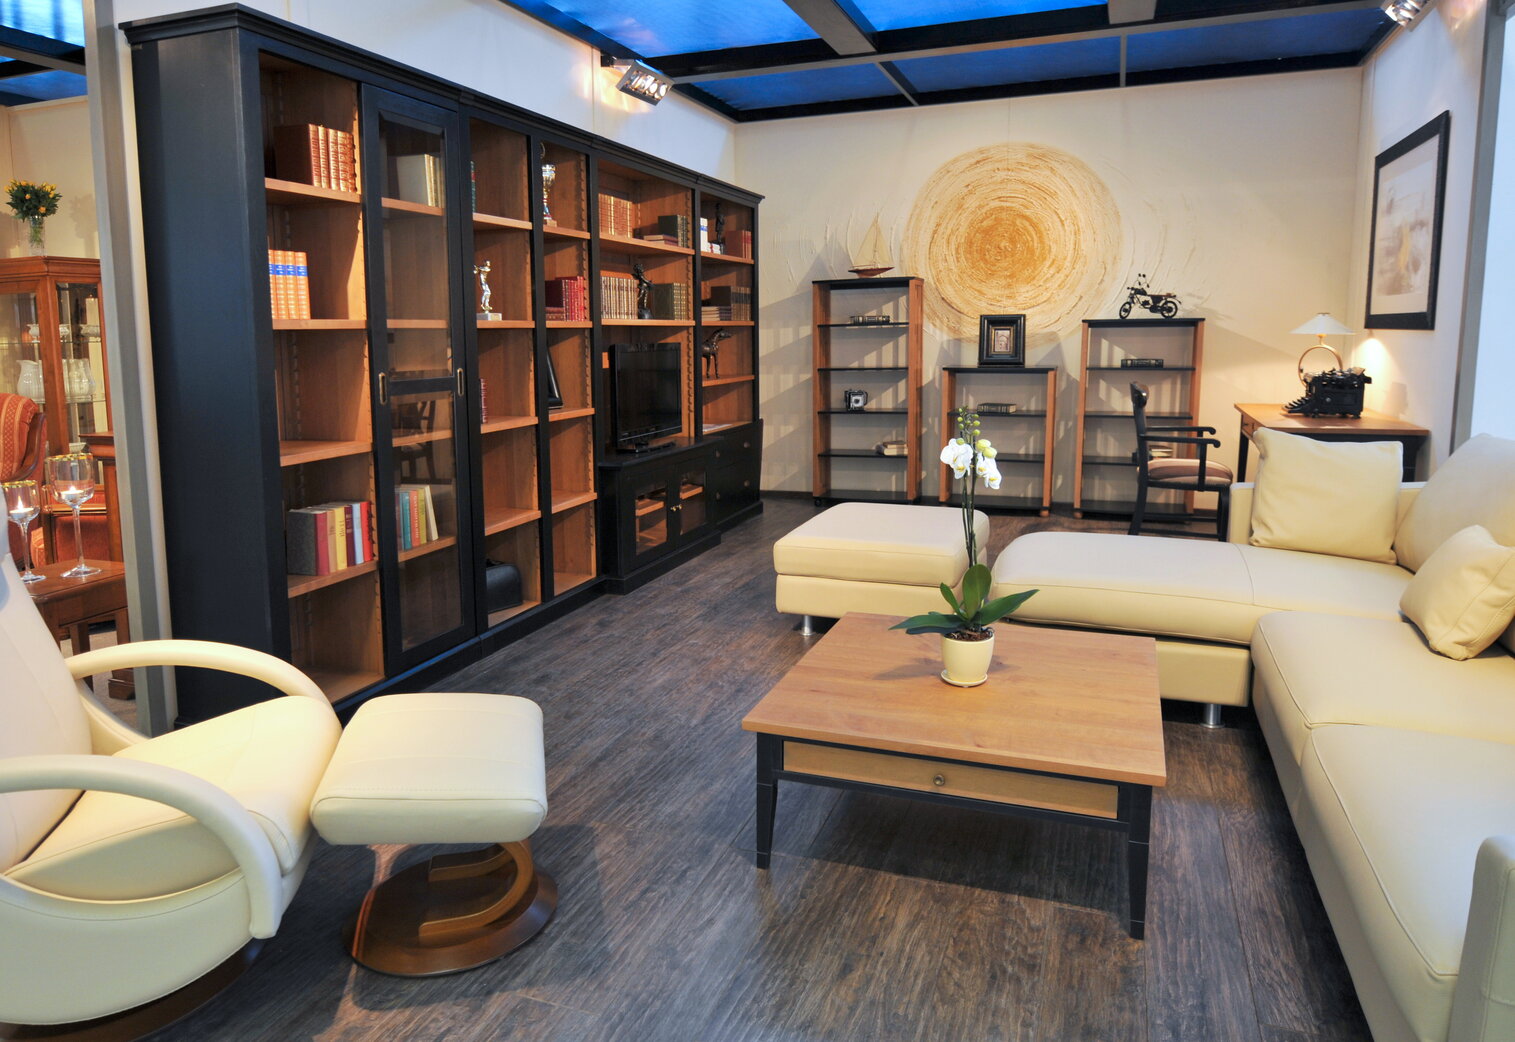 Moderná, priestranná obývačka v škandinávskom štýle. Biely, kožený gauč do tvaru L, konferenčný stôl, veľká knižnica s výrezom pre televízor a tri úložné regály všetko z masívneho dreva. Nábytok je hnedej farby v kombinácii s čiernymi elementami